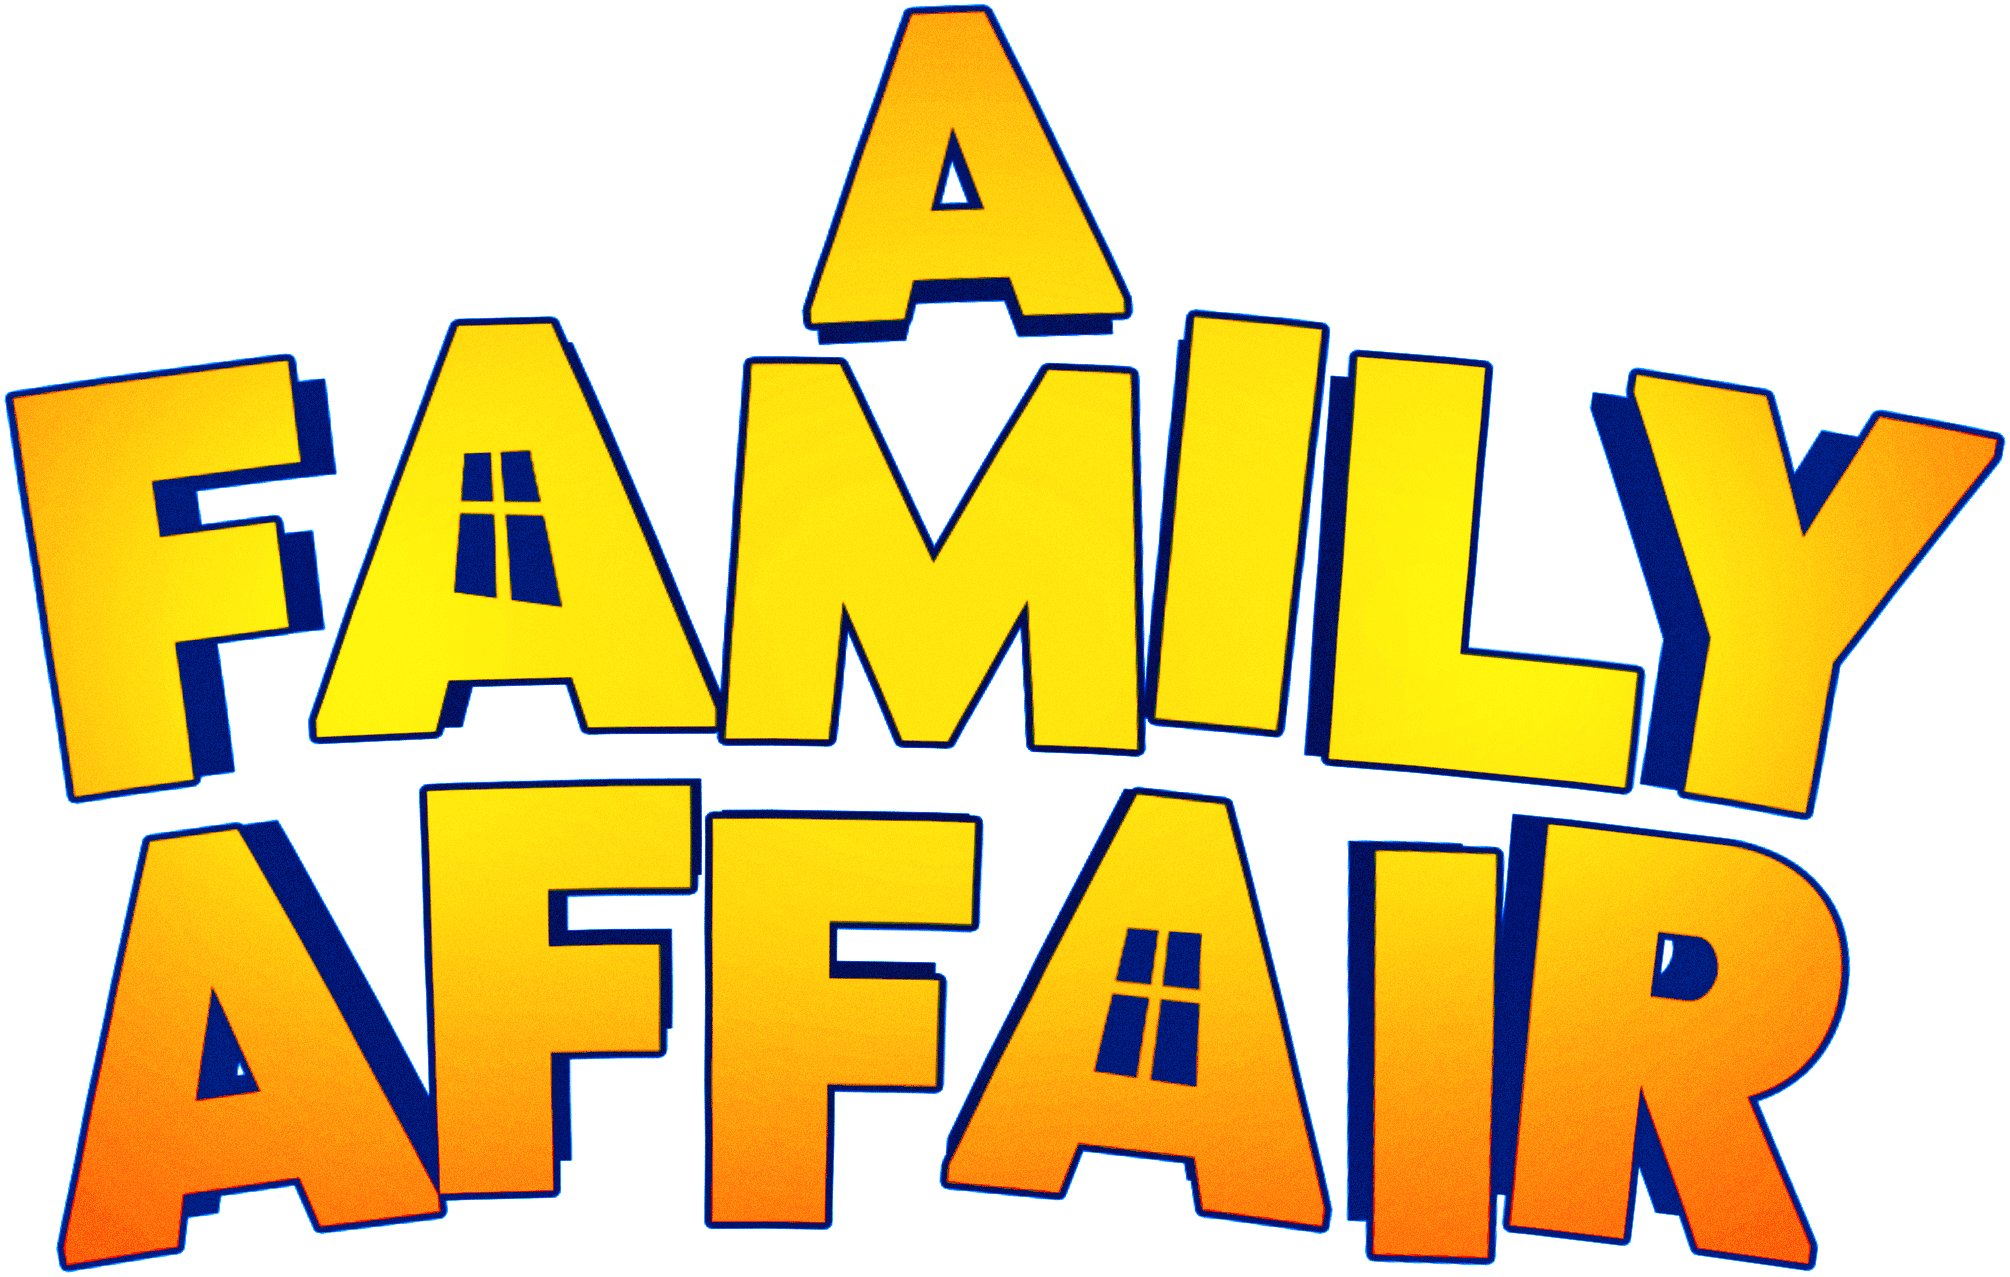 A Family Affair logo